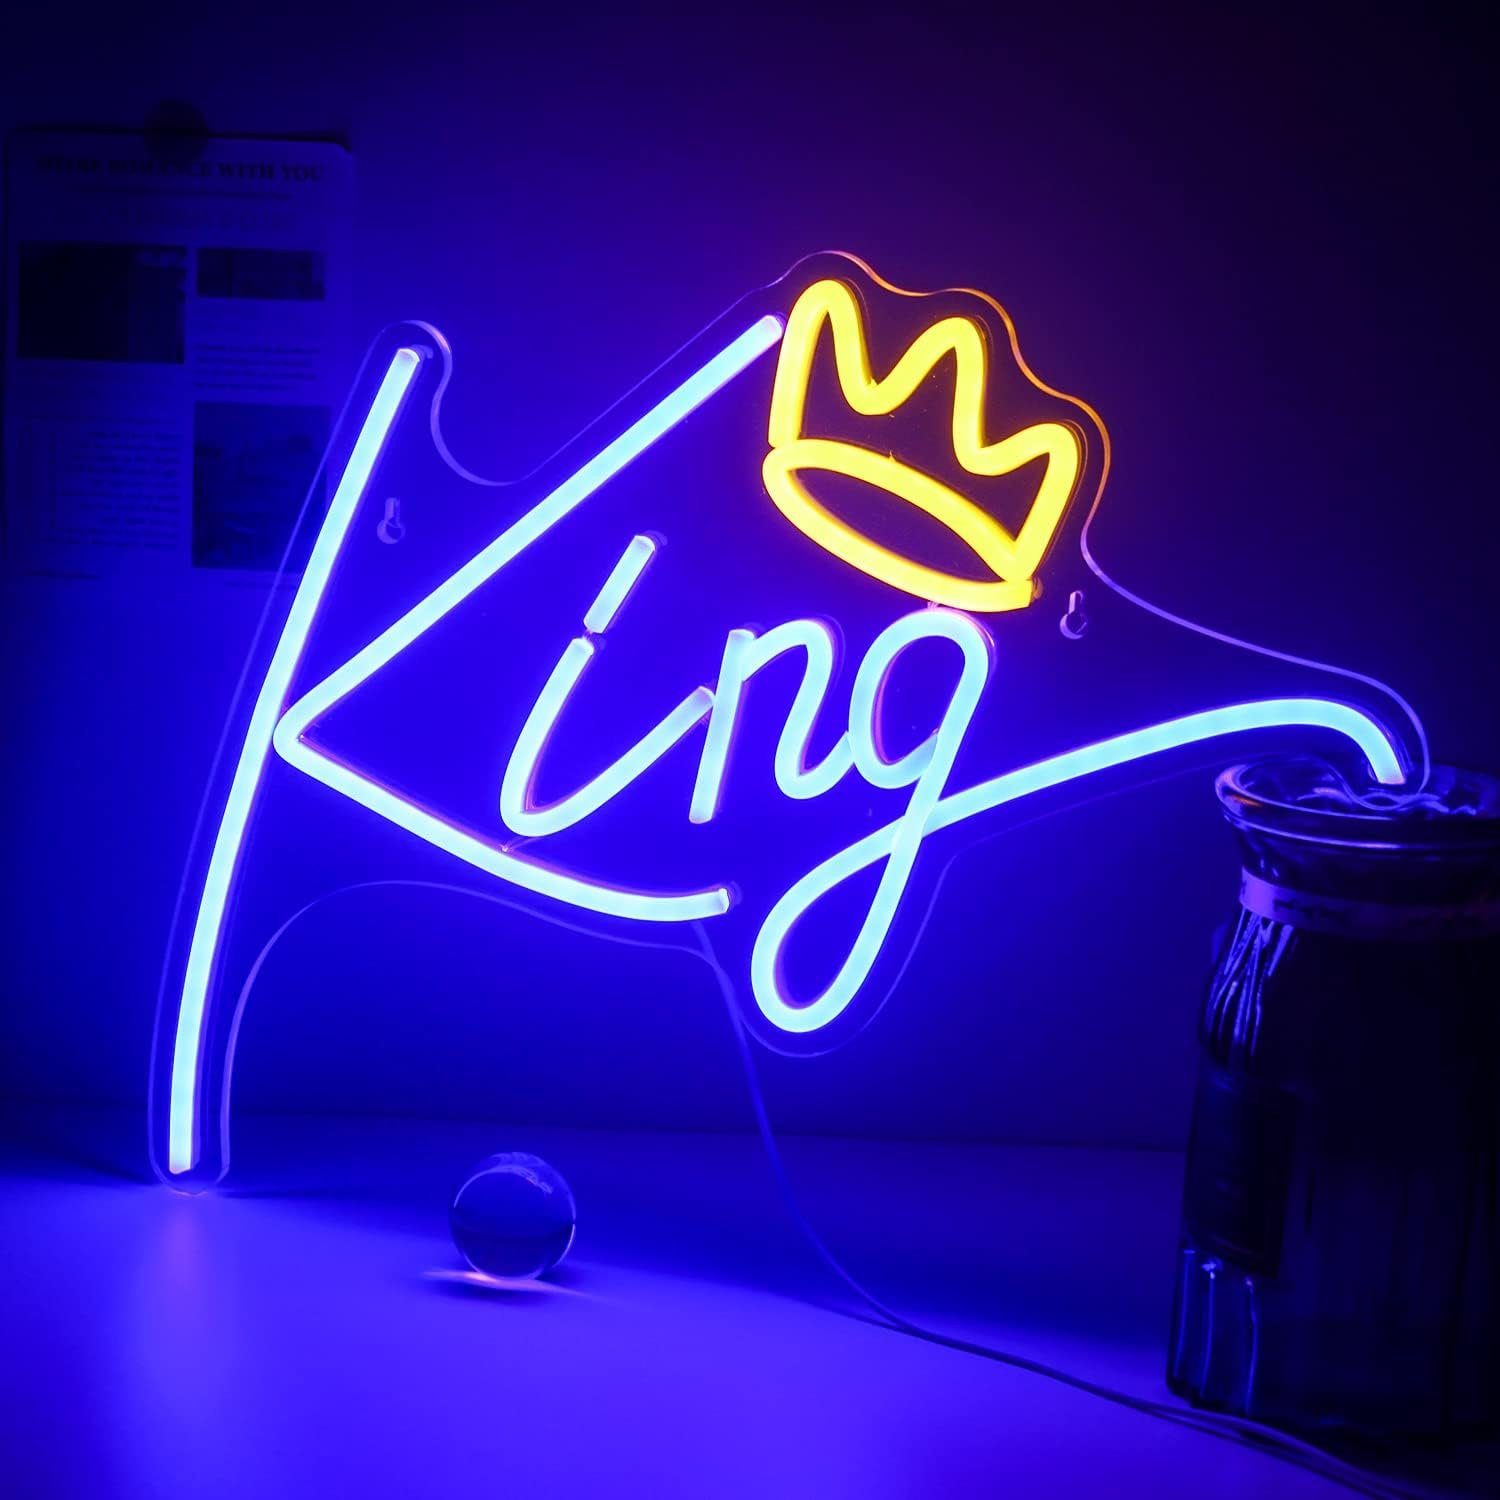 MUPOO LED Dekoobjekt Halloween Deko LED Neonschild King/Queen Acryl Nachtlicht,Schlafzimmer, Ein/Aus-Schalter,USB,Acryl, Neon Sign, Wandleuchte für Gaming Room Dekor, 2M Kabel-USB